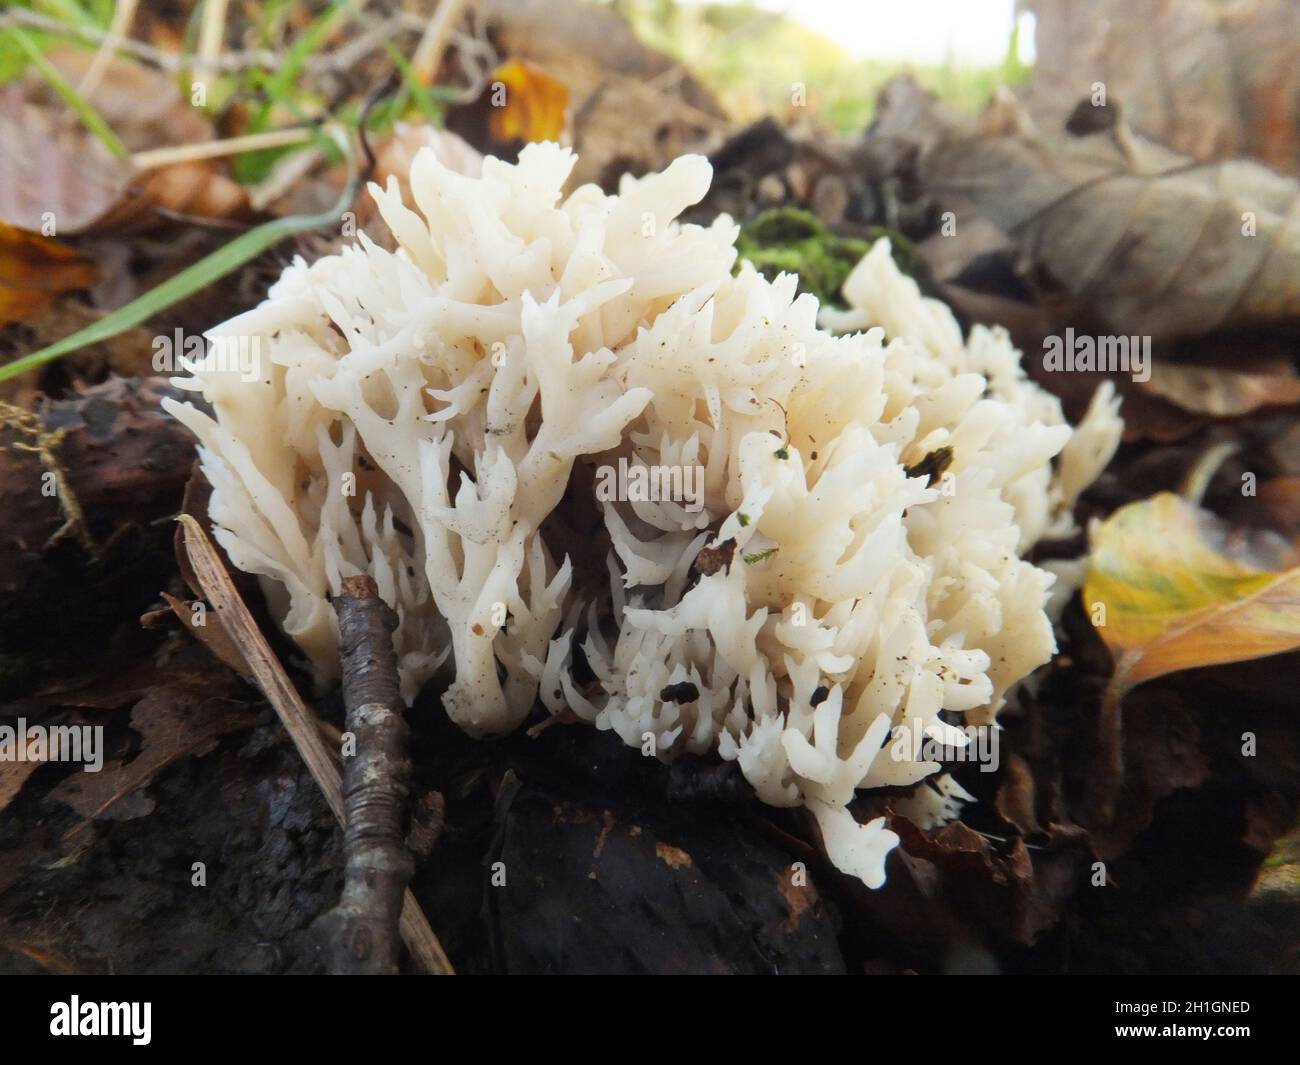 Crested Coral Fungus, 'Clavulina coralloides' corallo ramificato bianco come corpi fruttanti, a foglia larga o conifere Woodlands.Priddy, Mendip Hills, alcuni Foto Stock